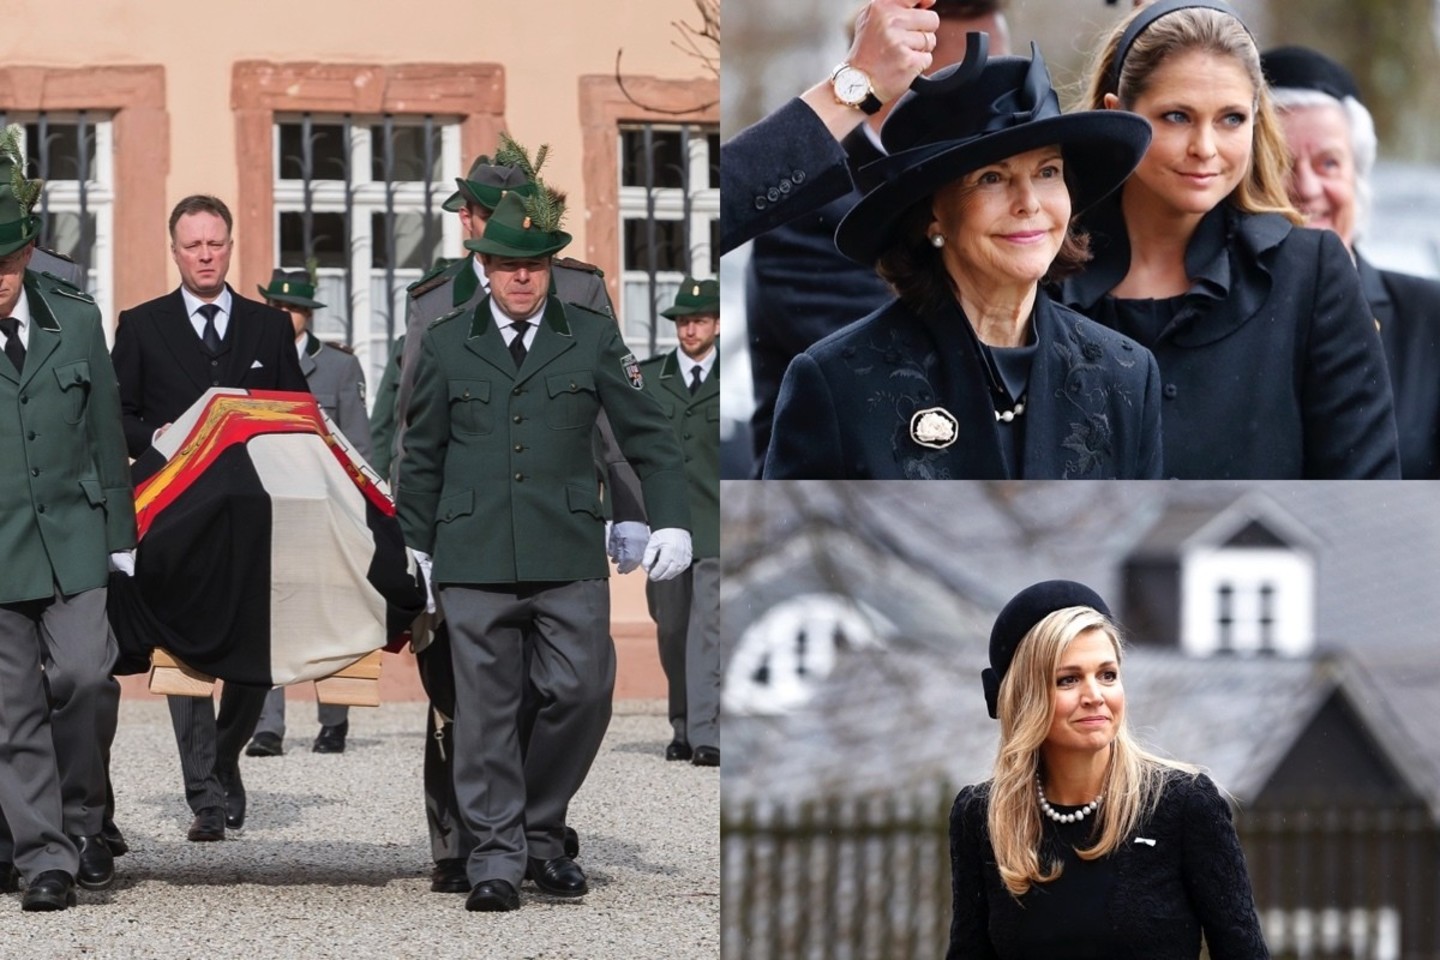 Karališkos laidotuvės Danijoje: į paskutinę kelionę palydėtas princas Richardas.